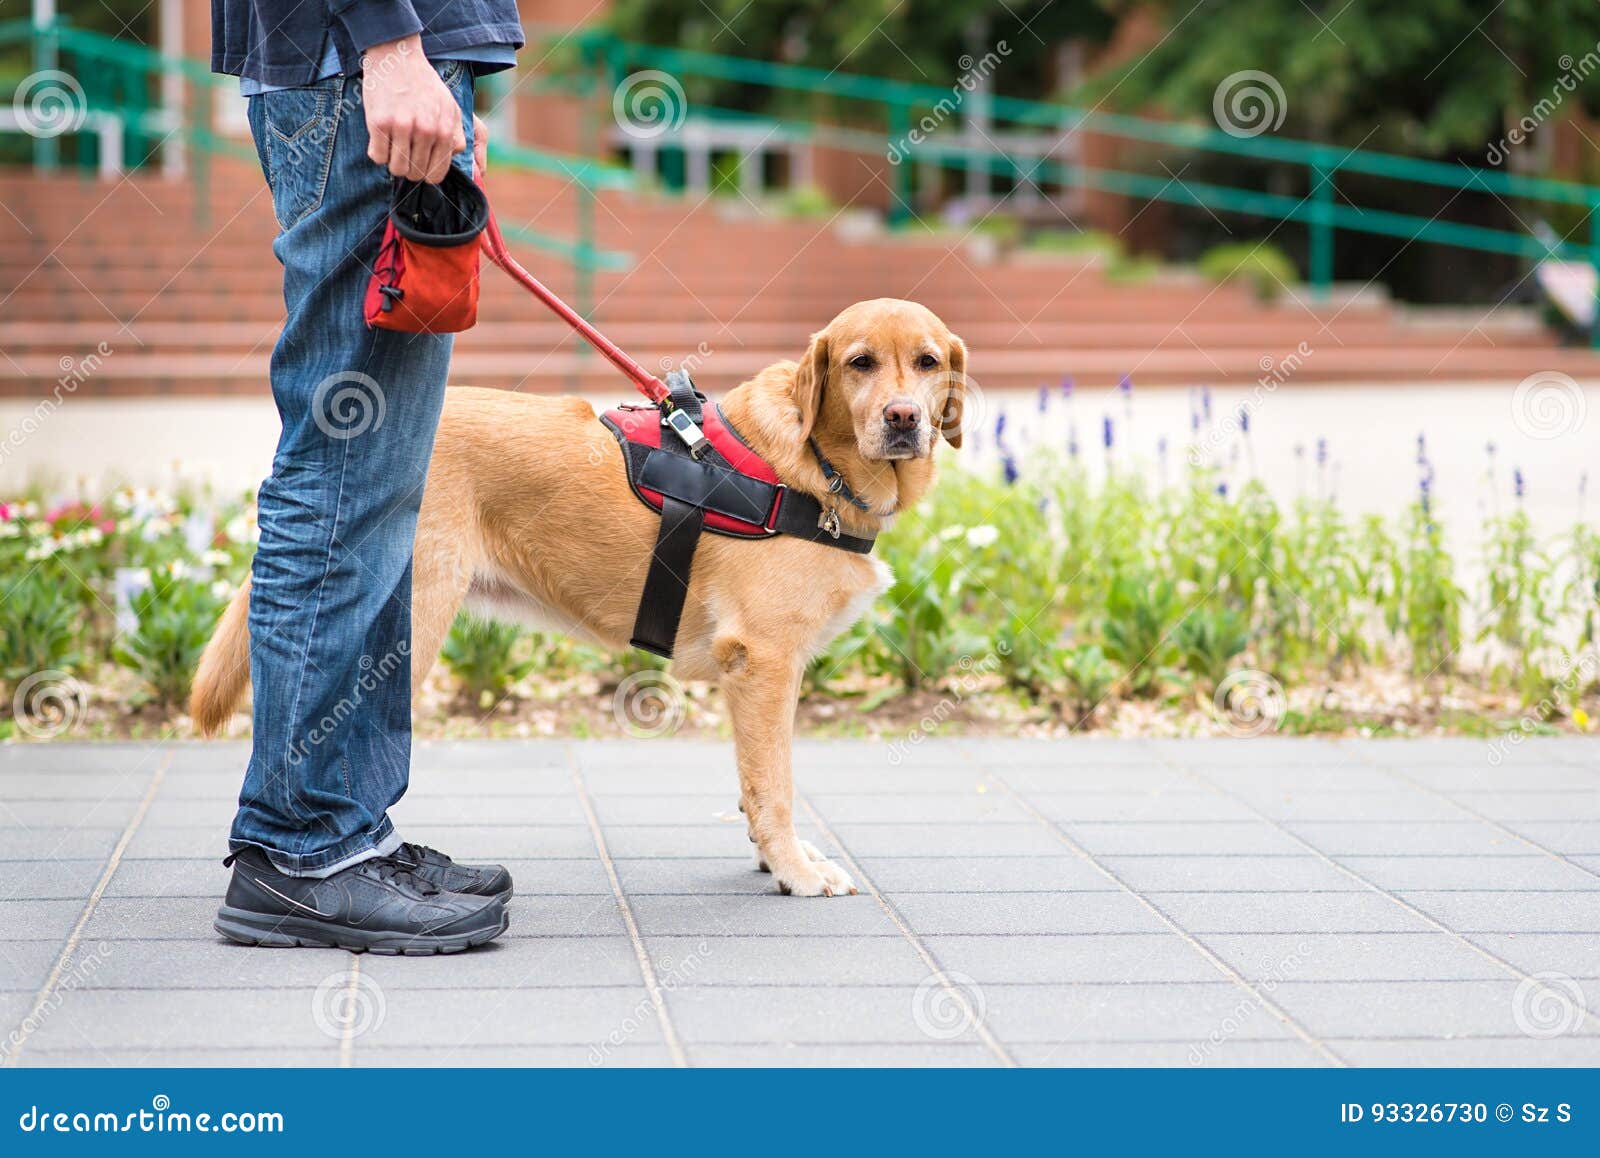 guide dog rescue